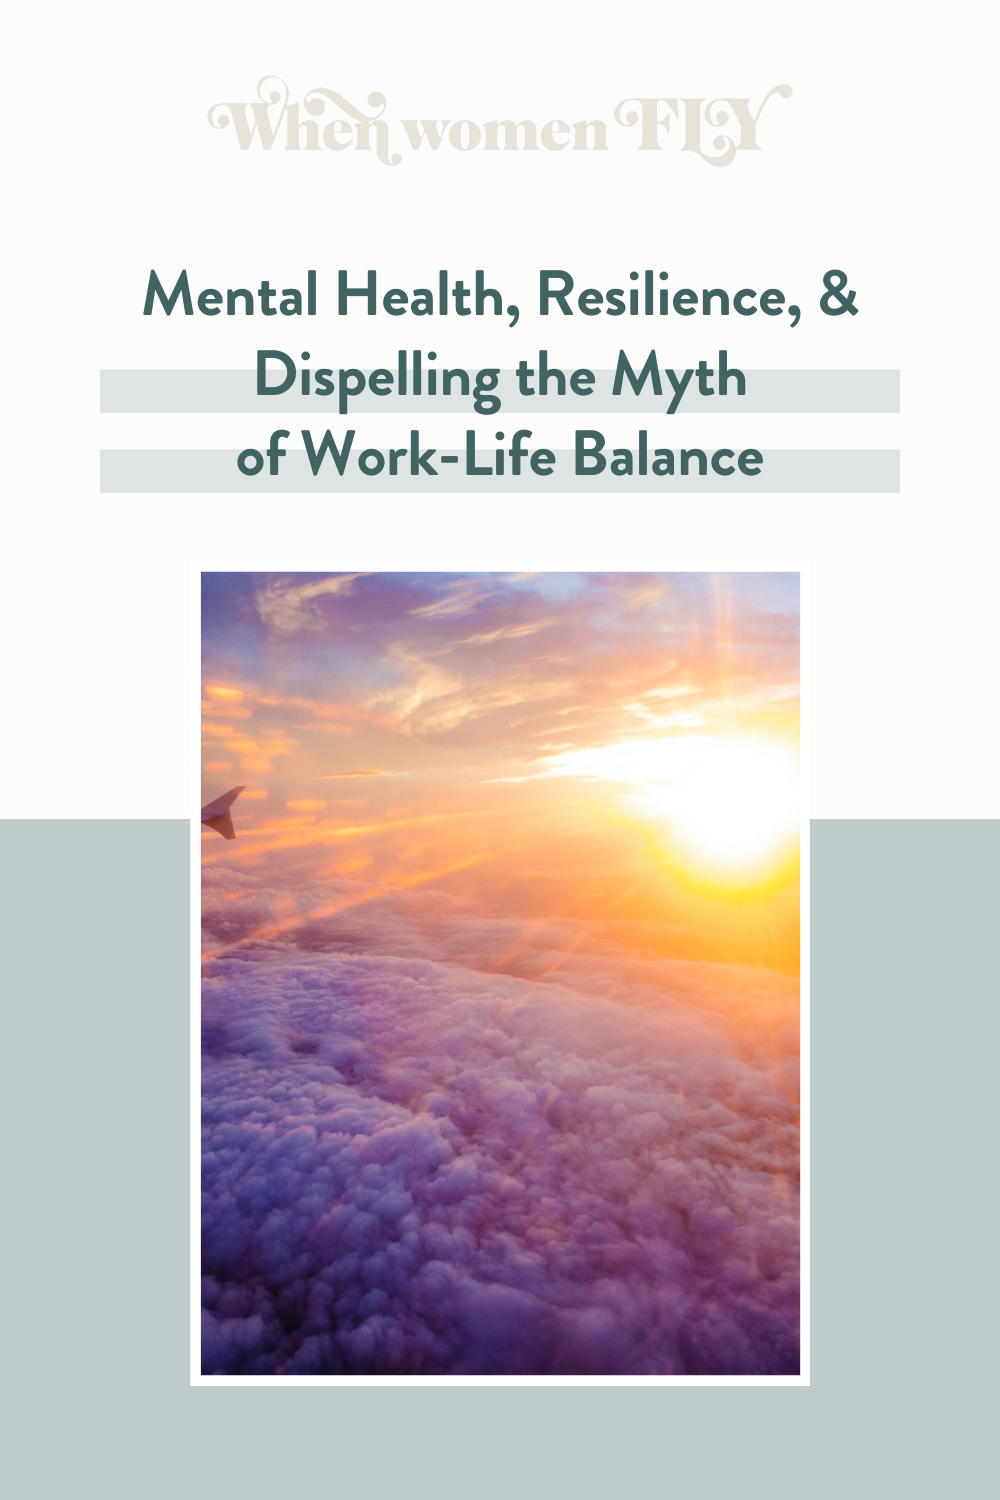 WWF Mental Health-Resilience-Work-Life Balance Myth 3.png